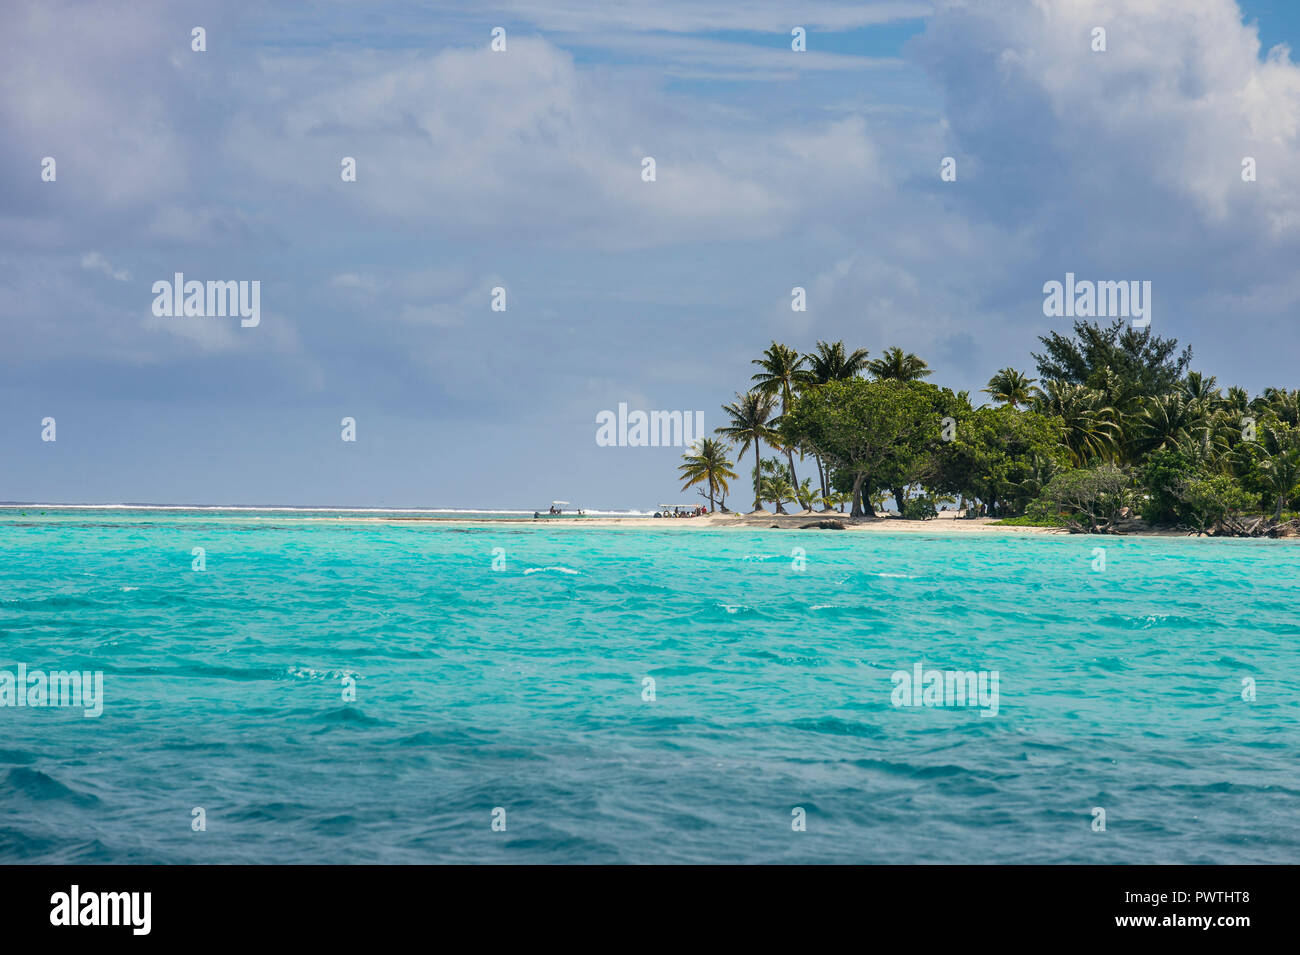 Motu isla en la laguna de color turquesa de Bora Bora, Französisch-Polynesien Foto de stock